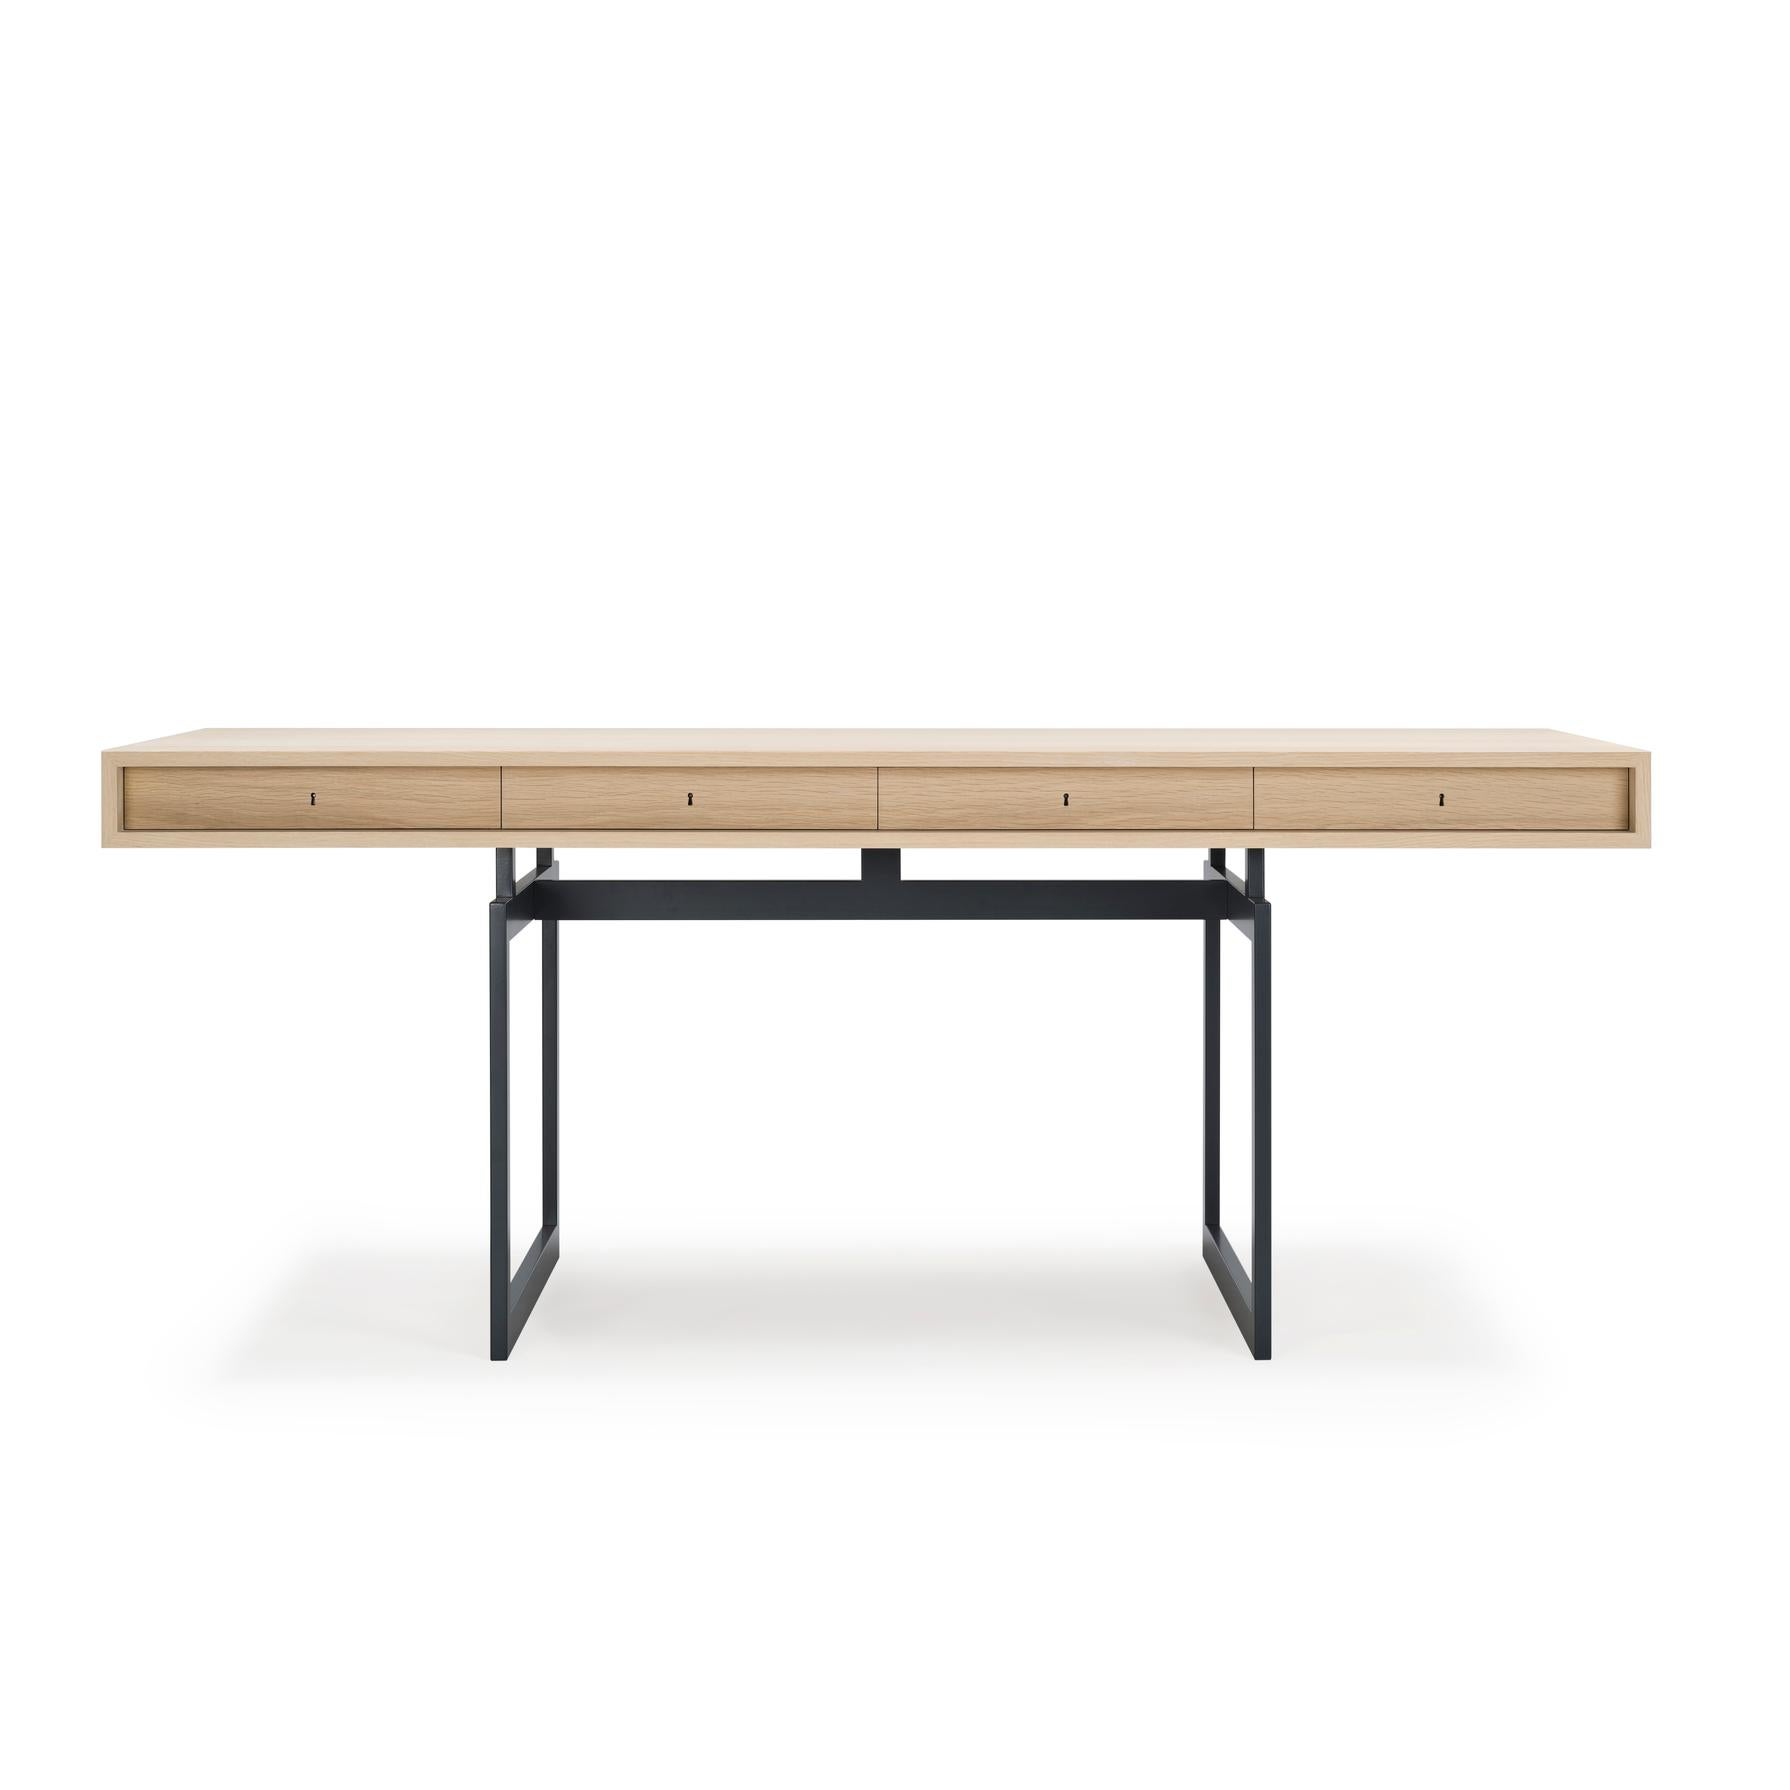 Tisch, entworfen von Bodil Kjær im Jahr 1959. 

Wir sind stolz darauf, unseren ersten Entwurf eines dänischen Designers zu präsentieren. In diesem Fall ist es die dänische Architektin, Professorin und Designerin Bodil Kjær. Der ikonische